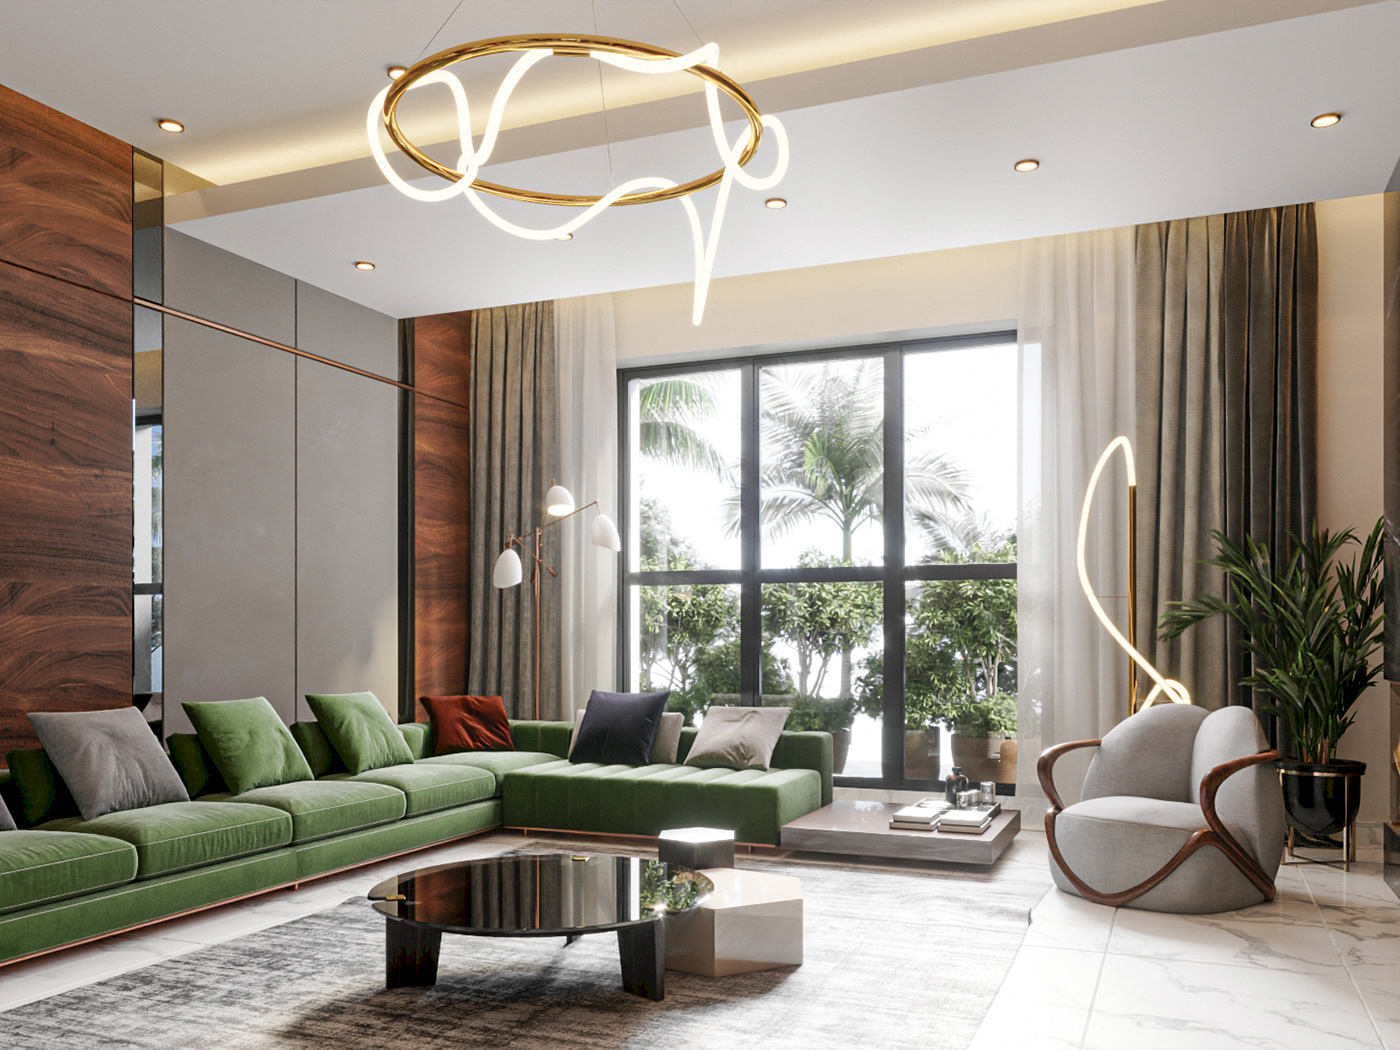 3dsmax architecture creative design dinnig dubai Interior living Render Saudi